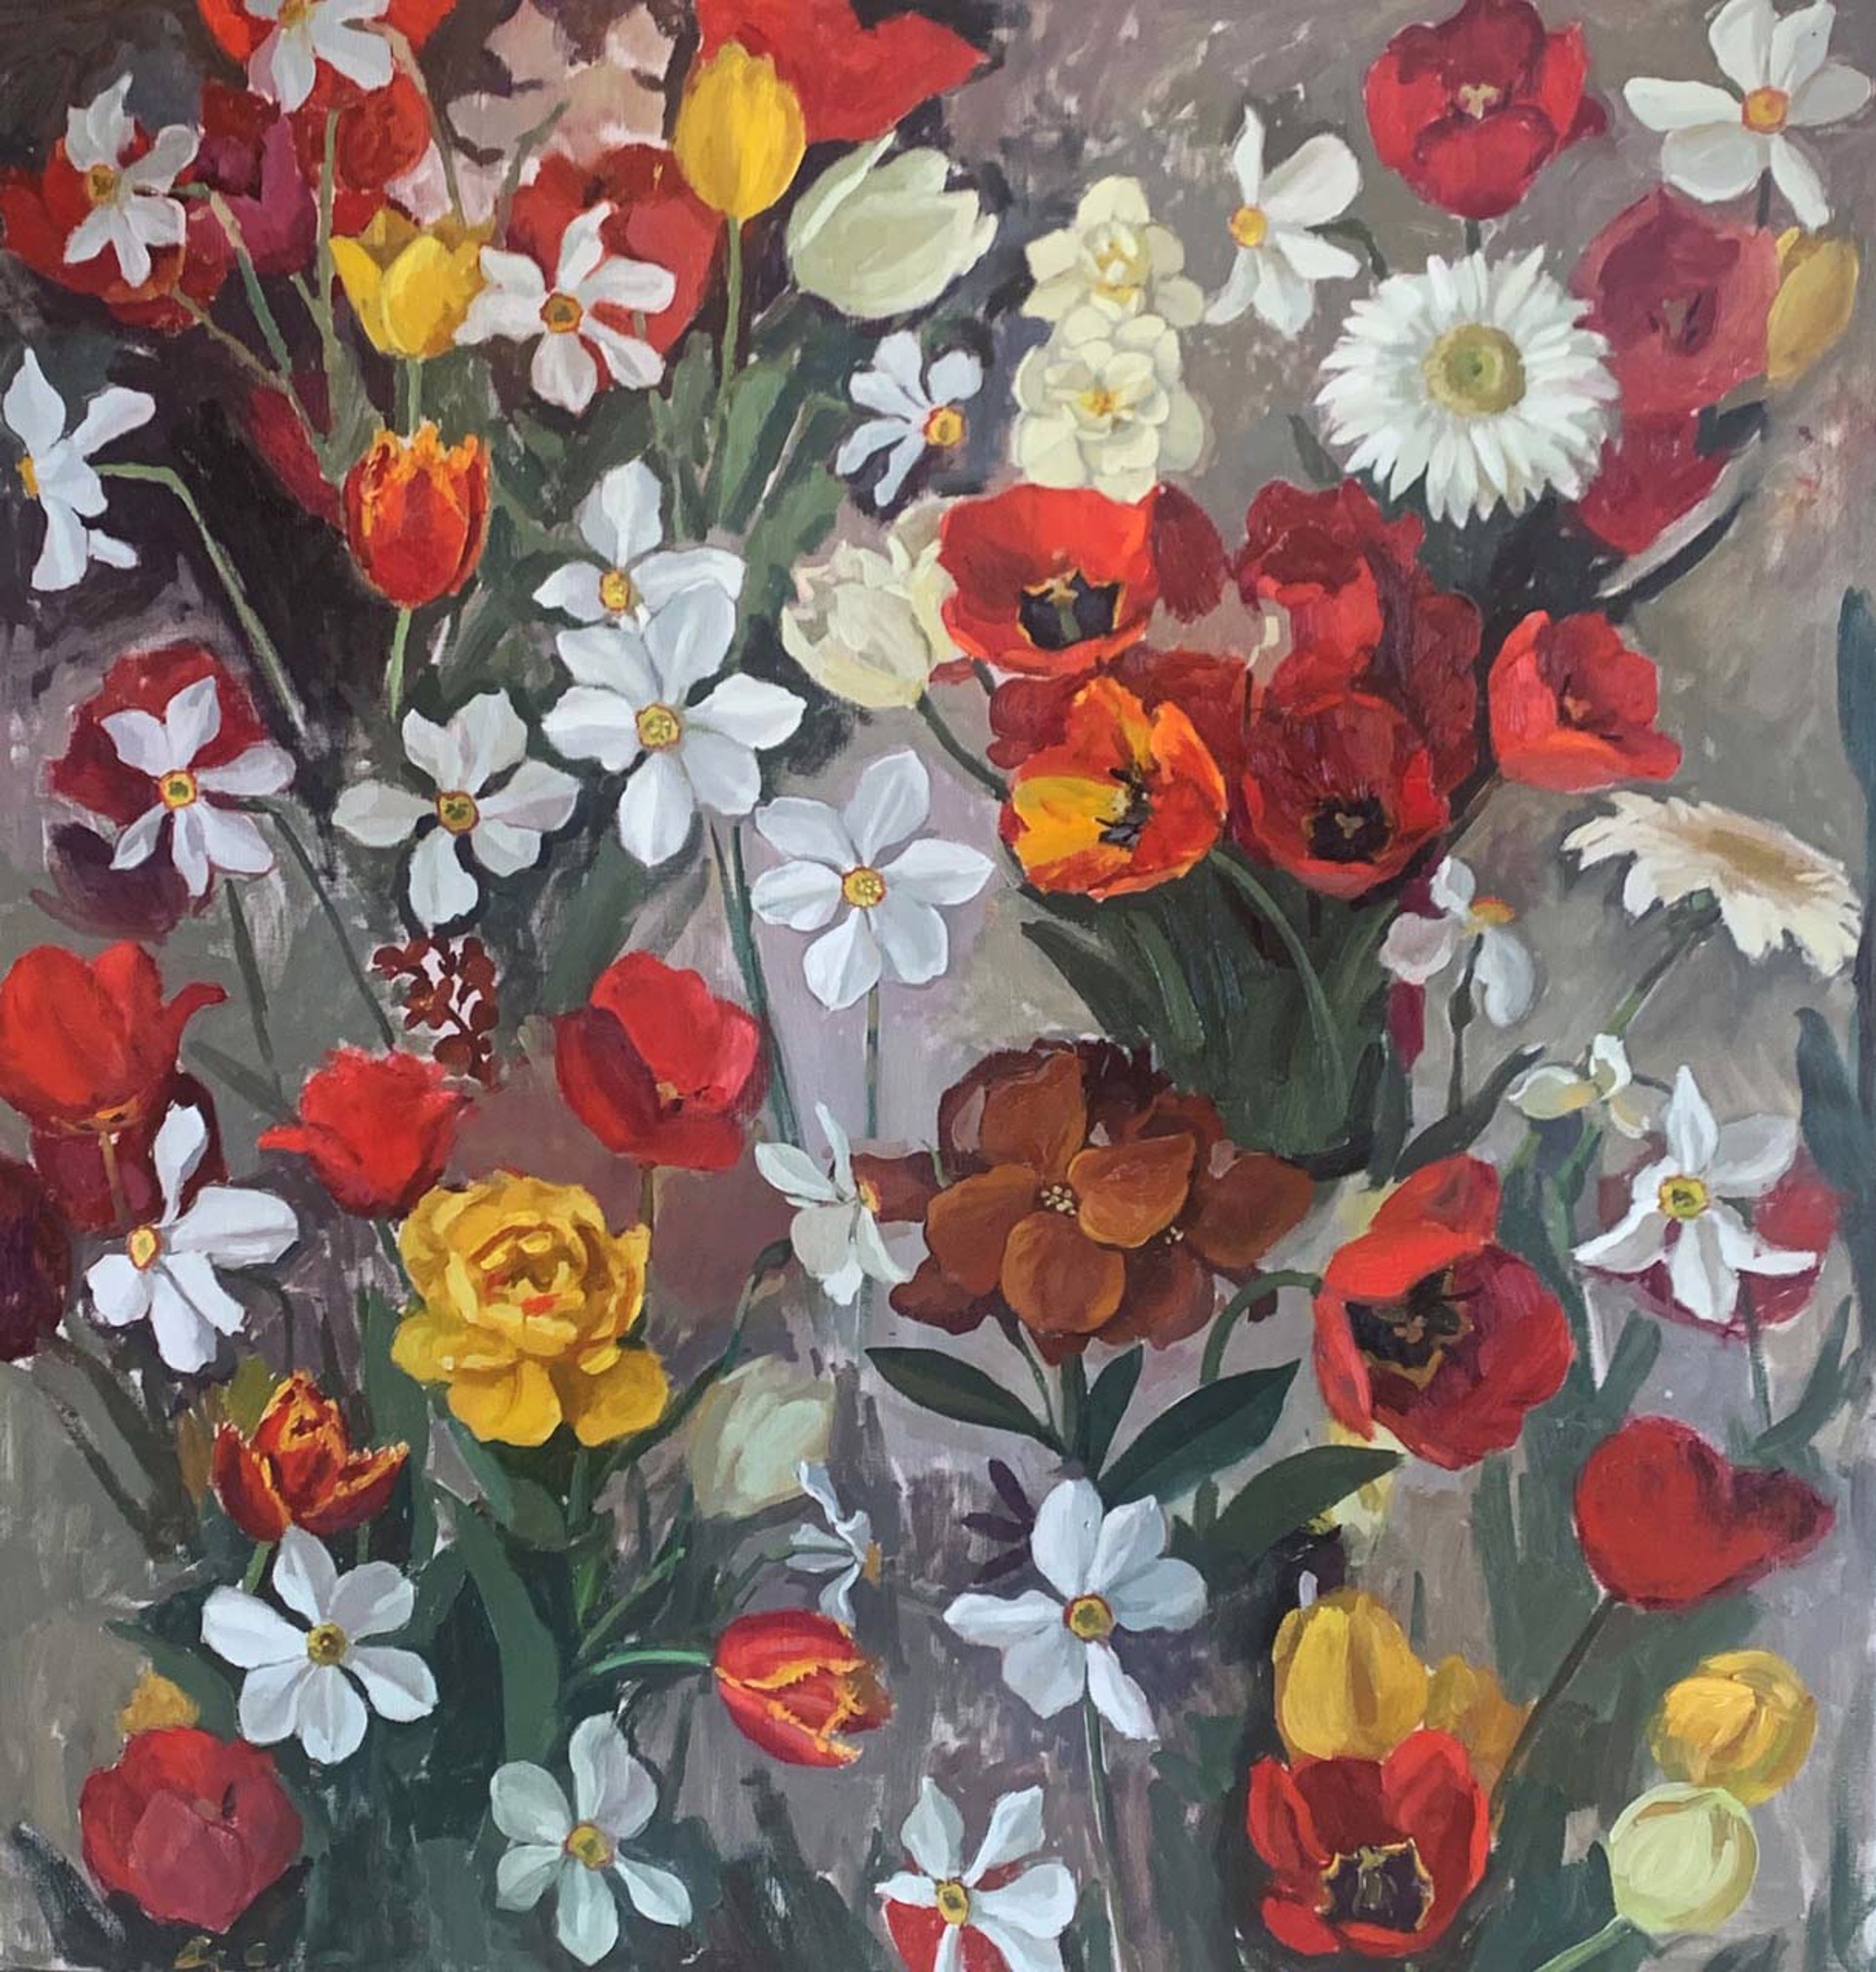 Flowers by Alina Sharovskaya